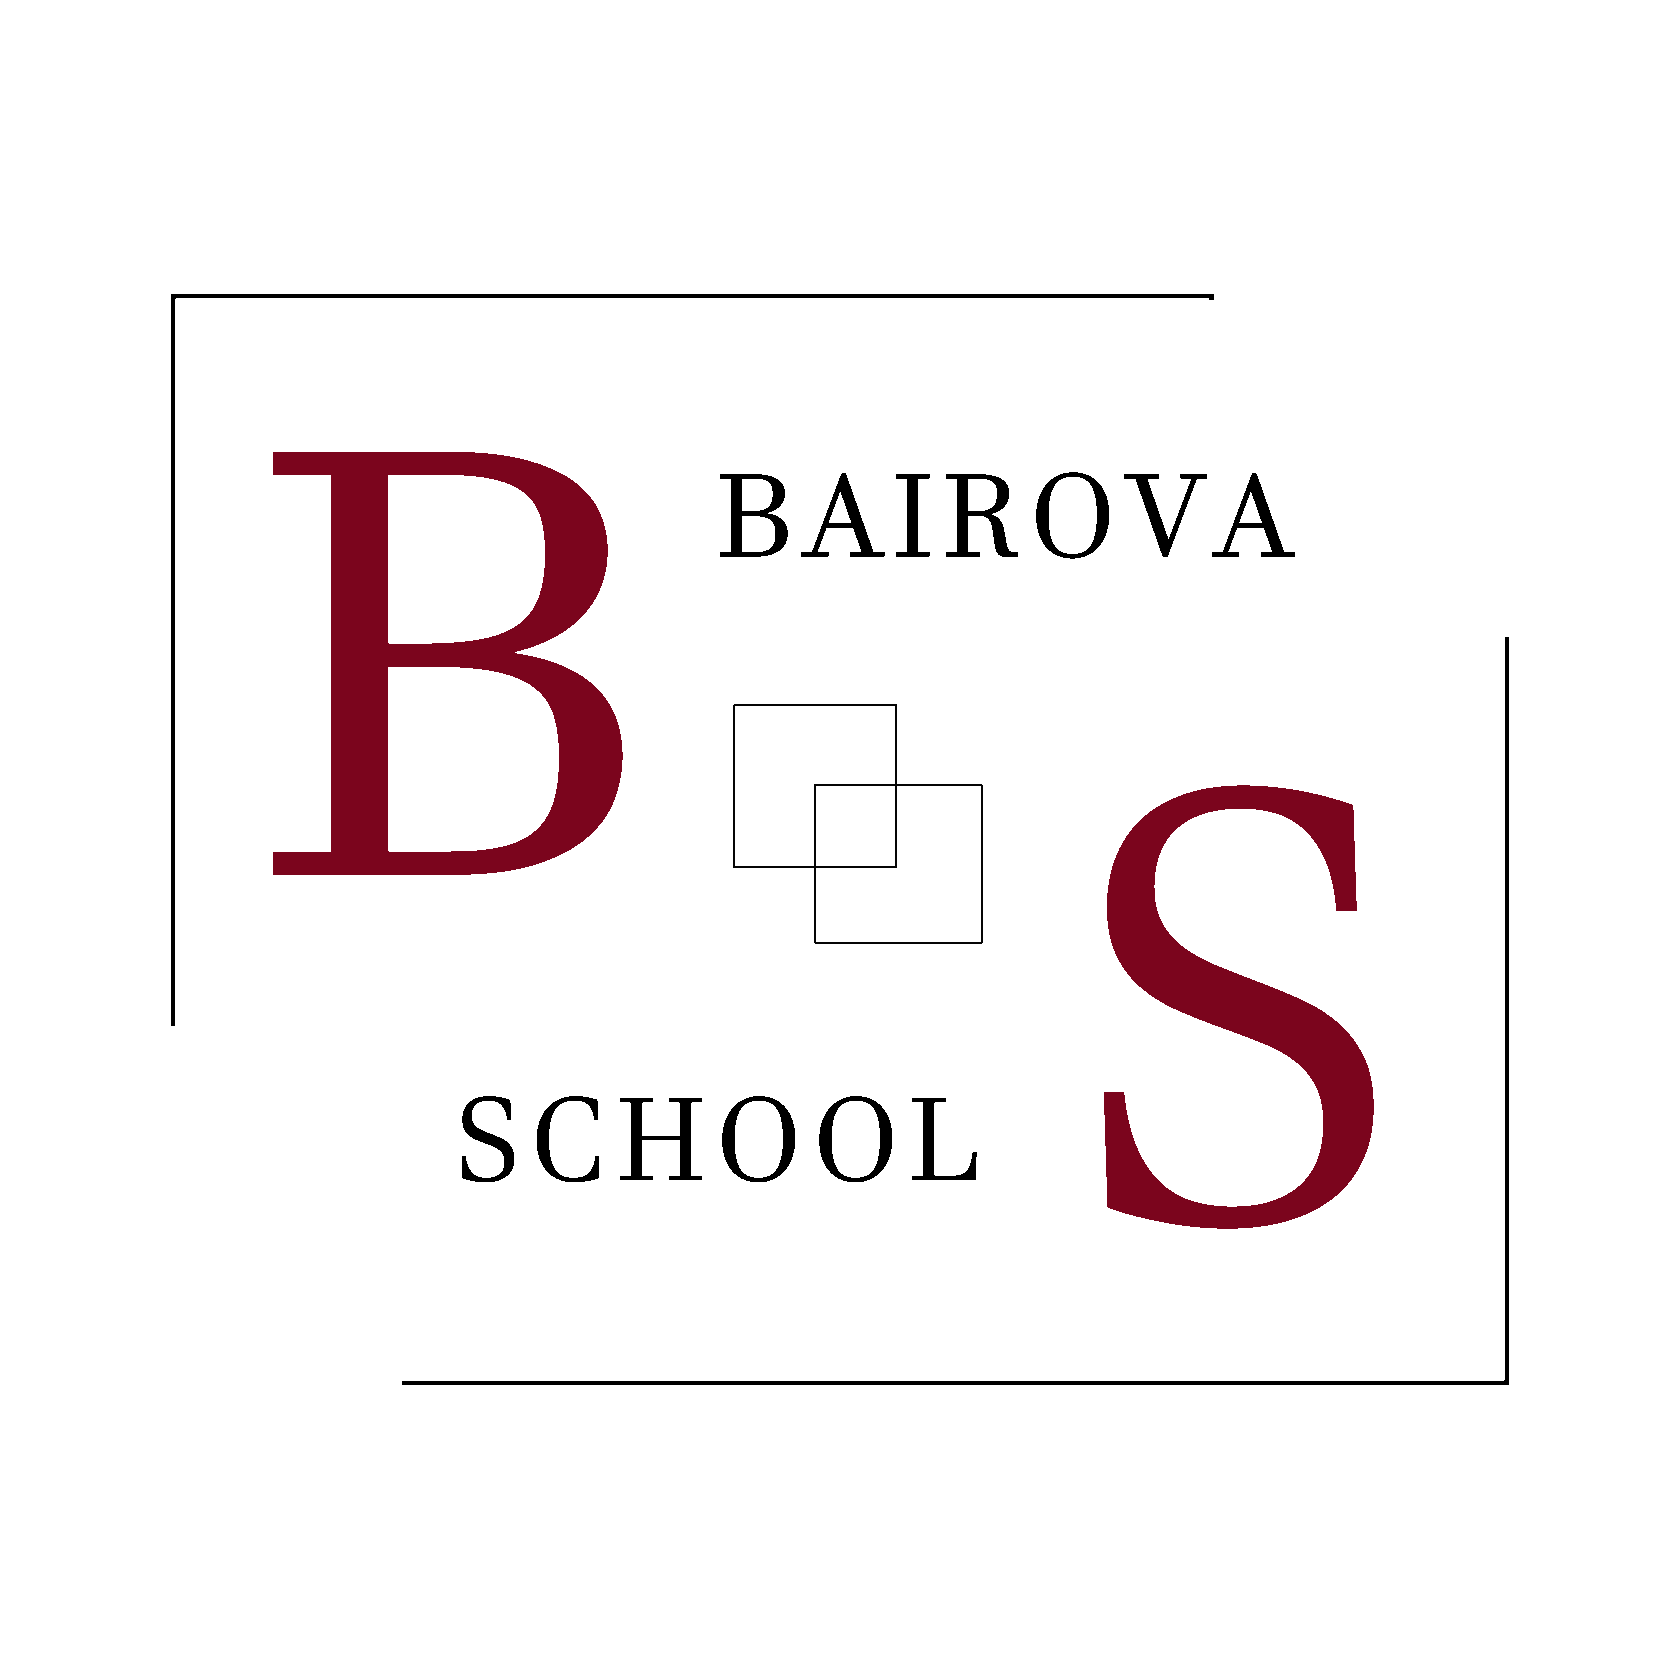  BAIROVA SCHOOL 